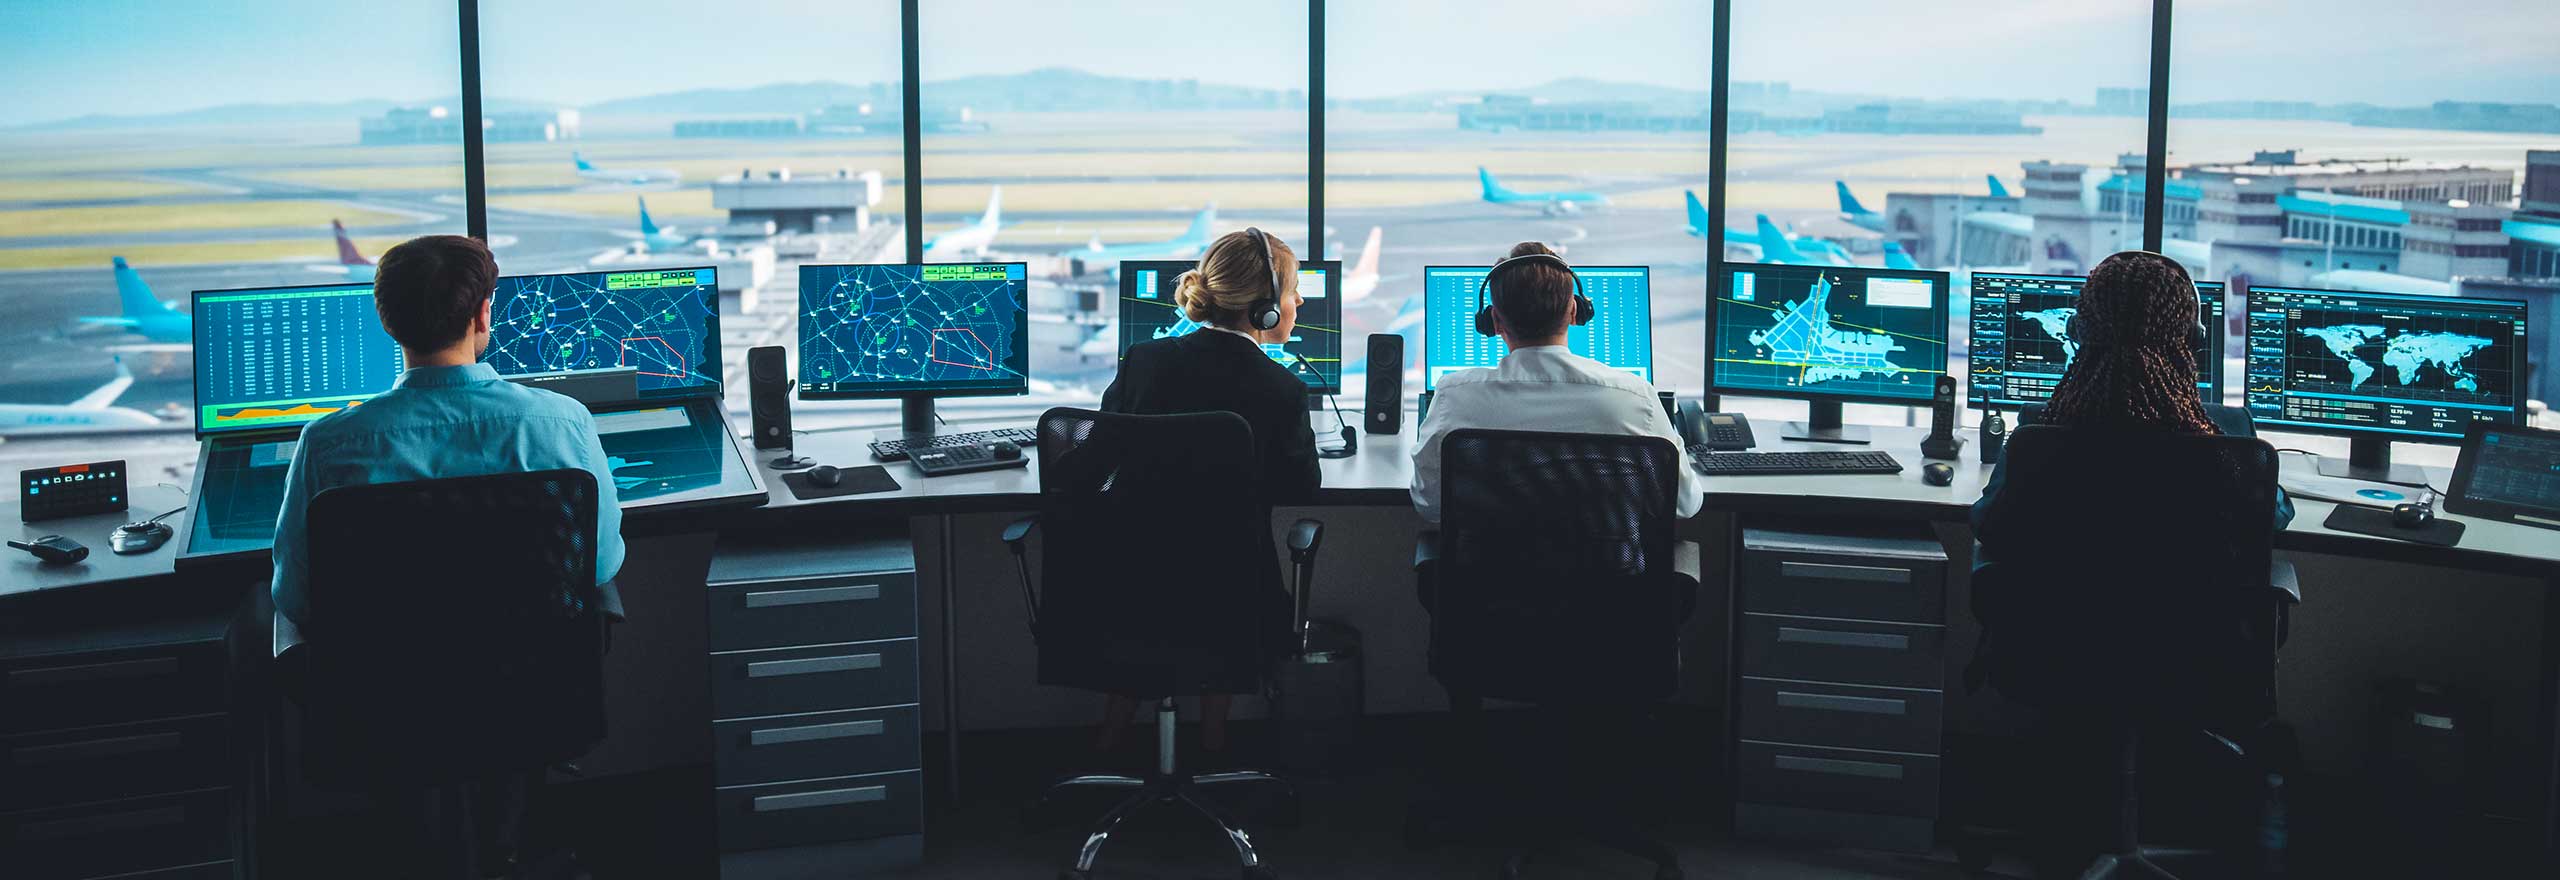 Controllori del traffico aereo che gestiscono il traffico aereo